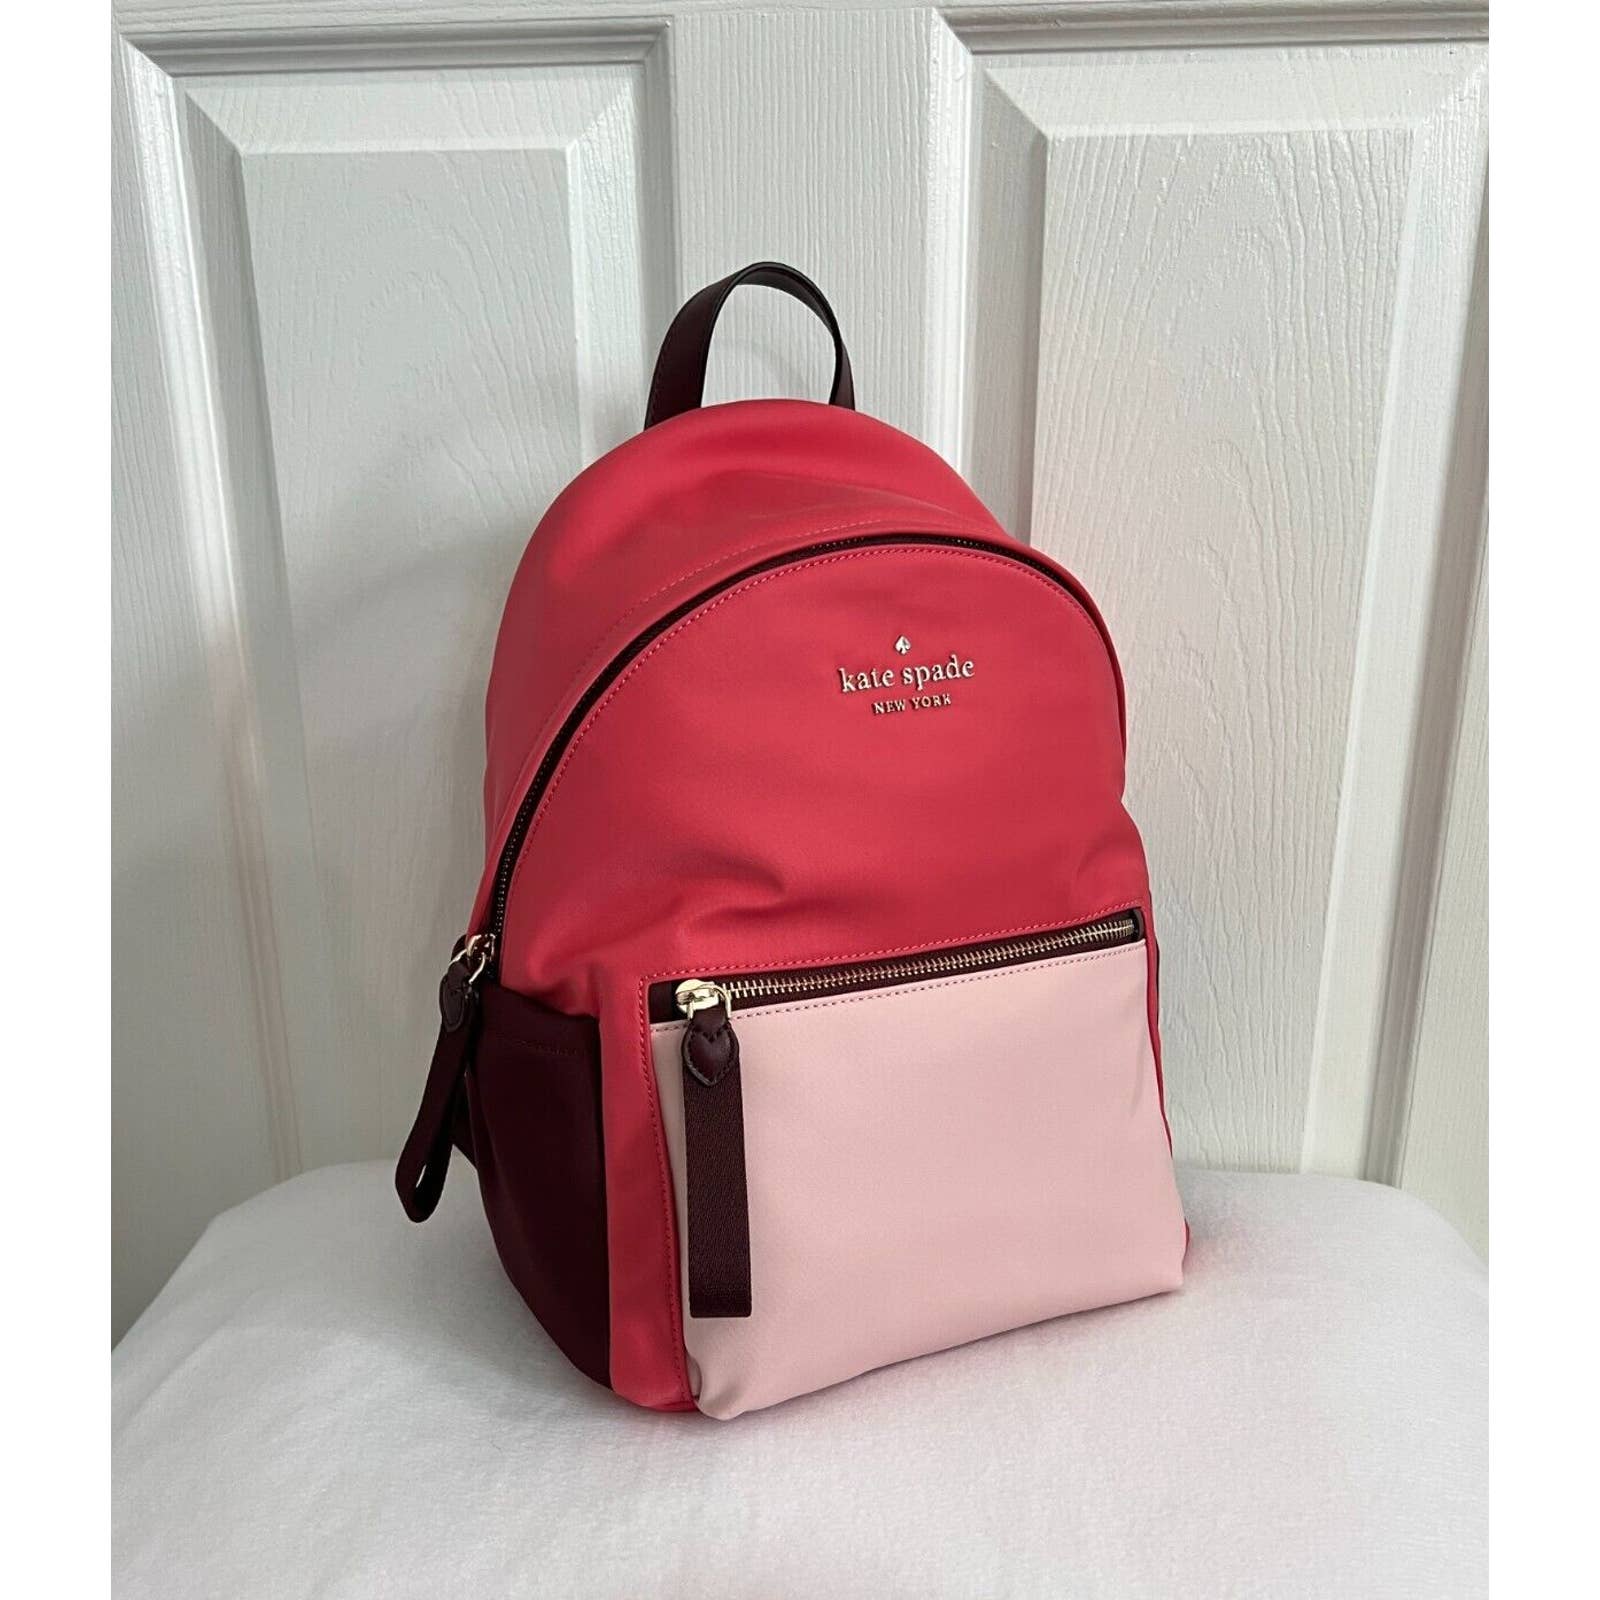  kate spade backpack handbag for women Chelsea the